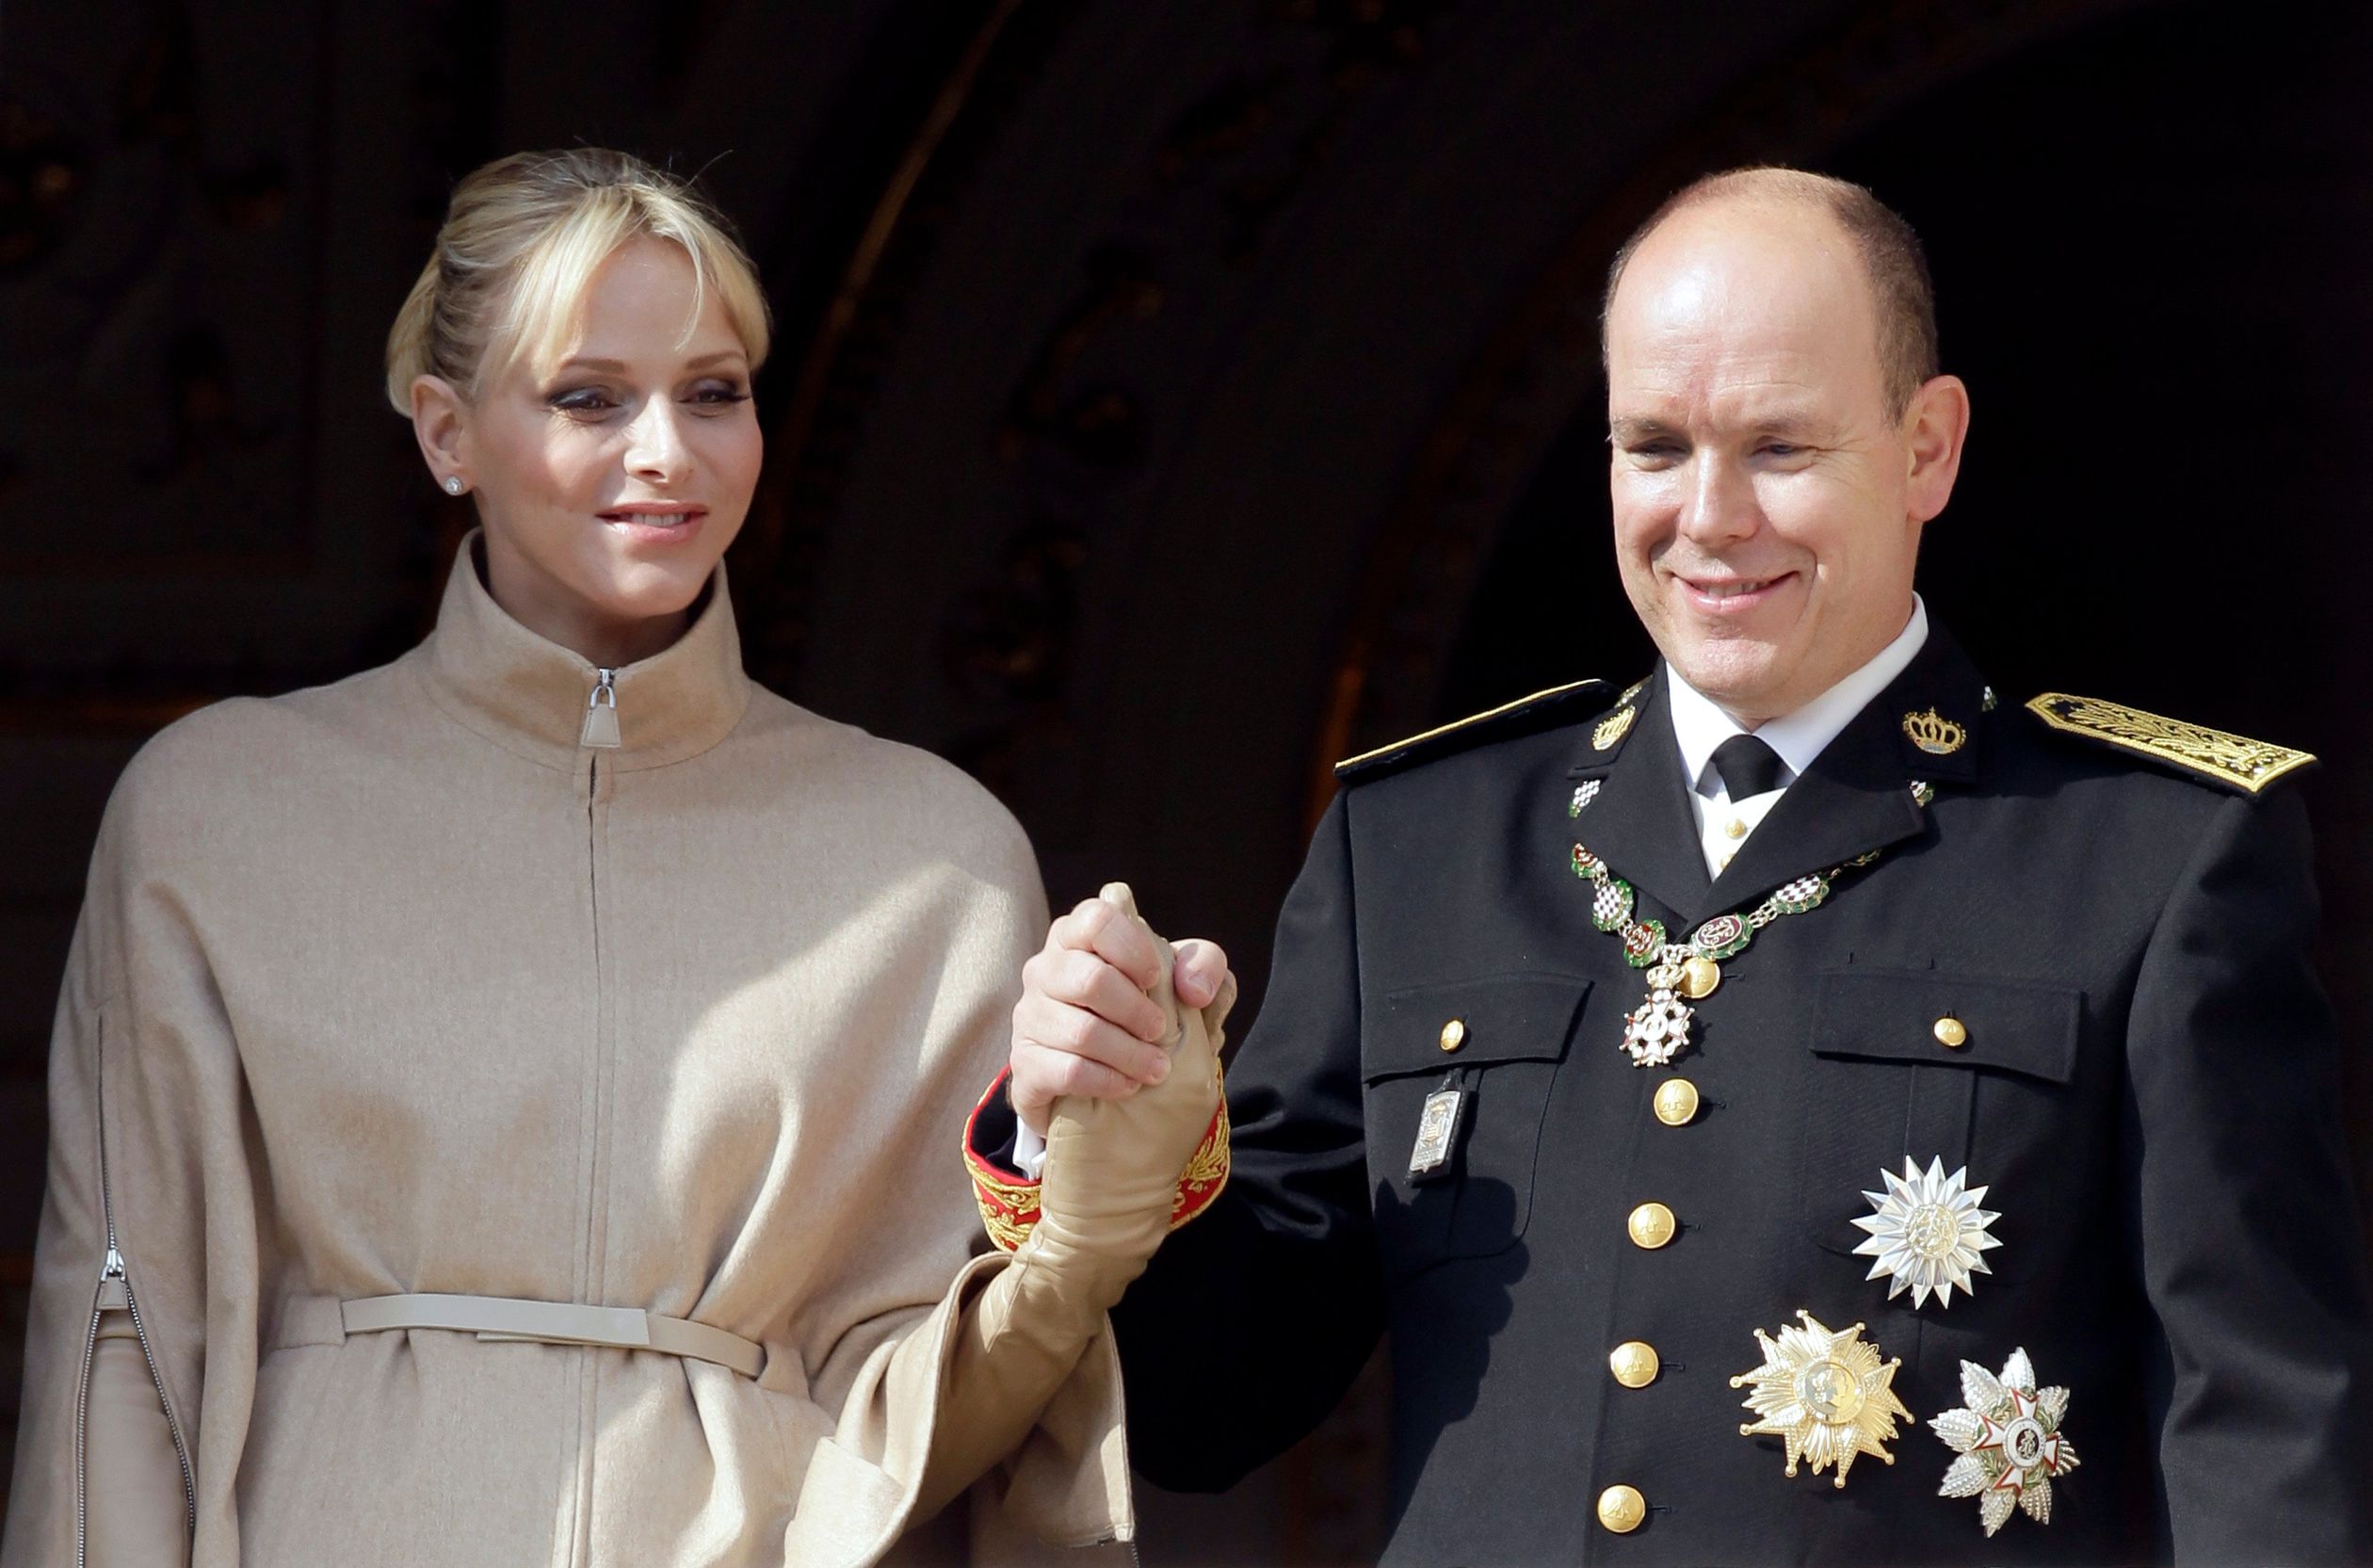 Charlène verschijnt voor het eerst als prinses op het balkon, 19 november 2011.